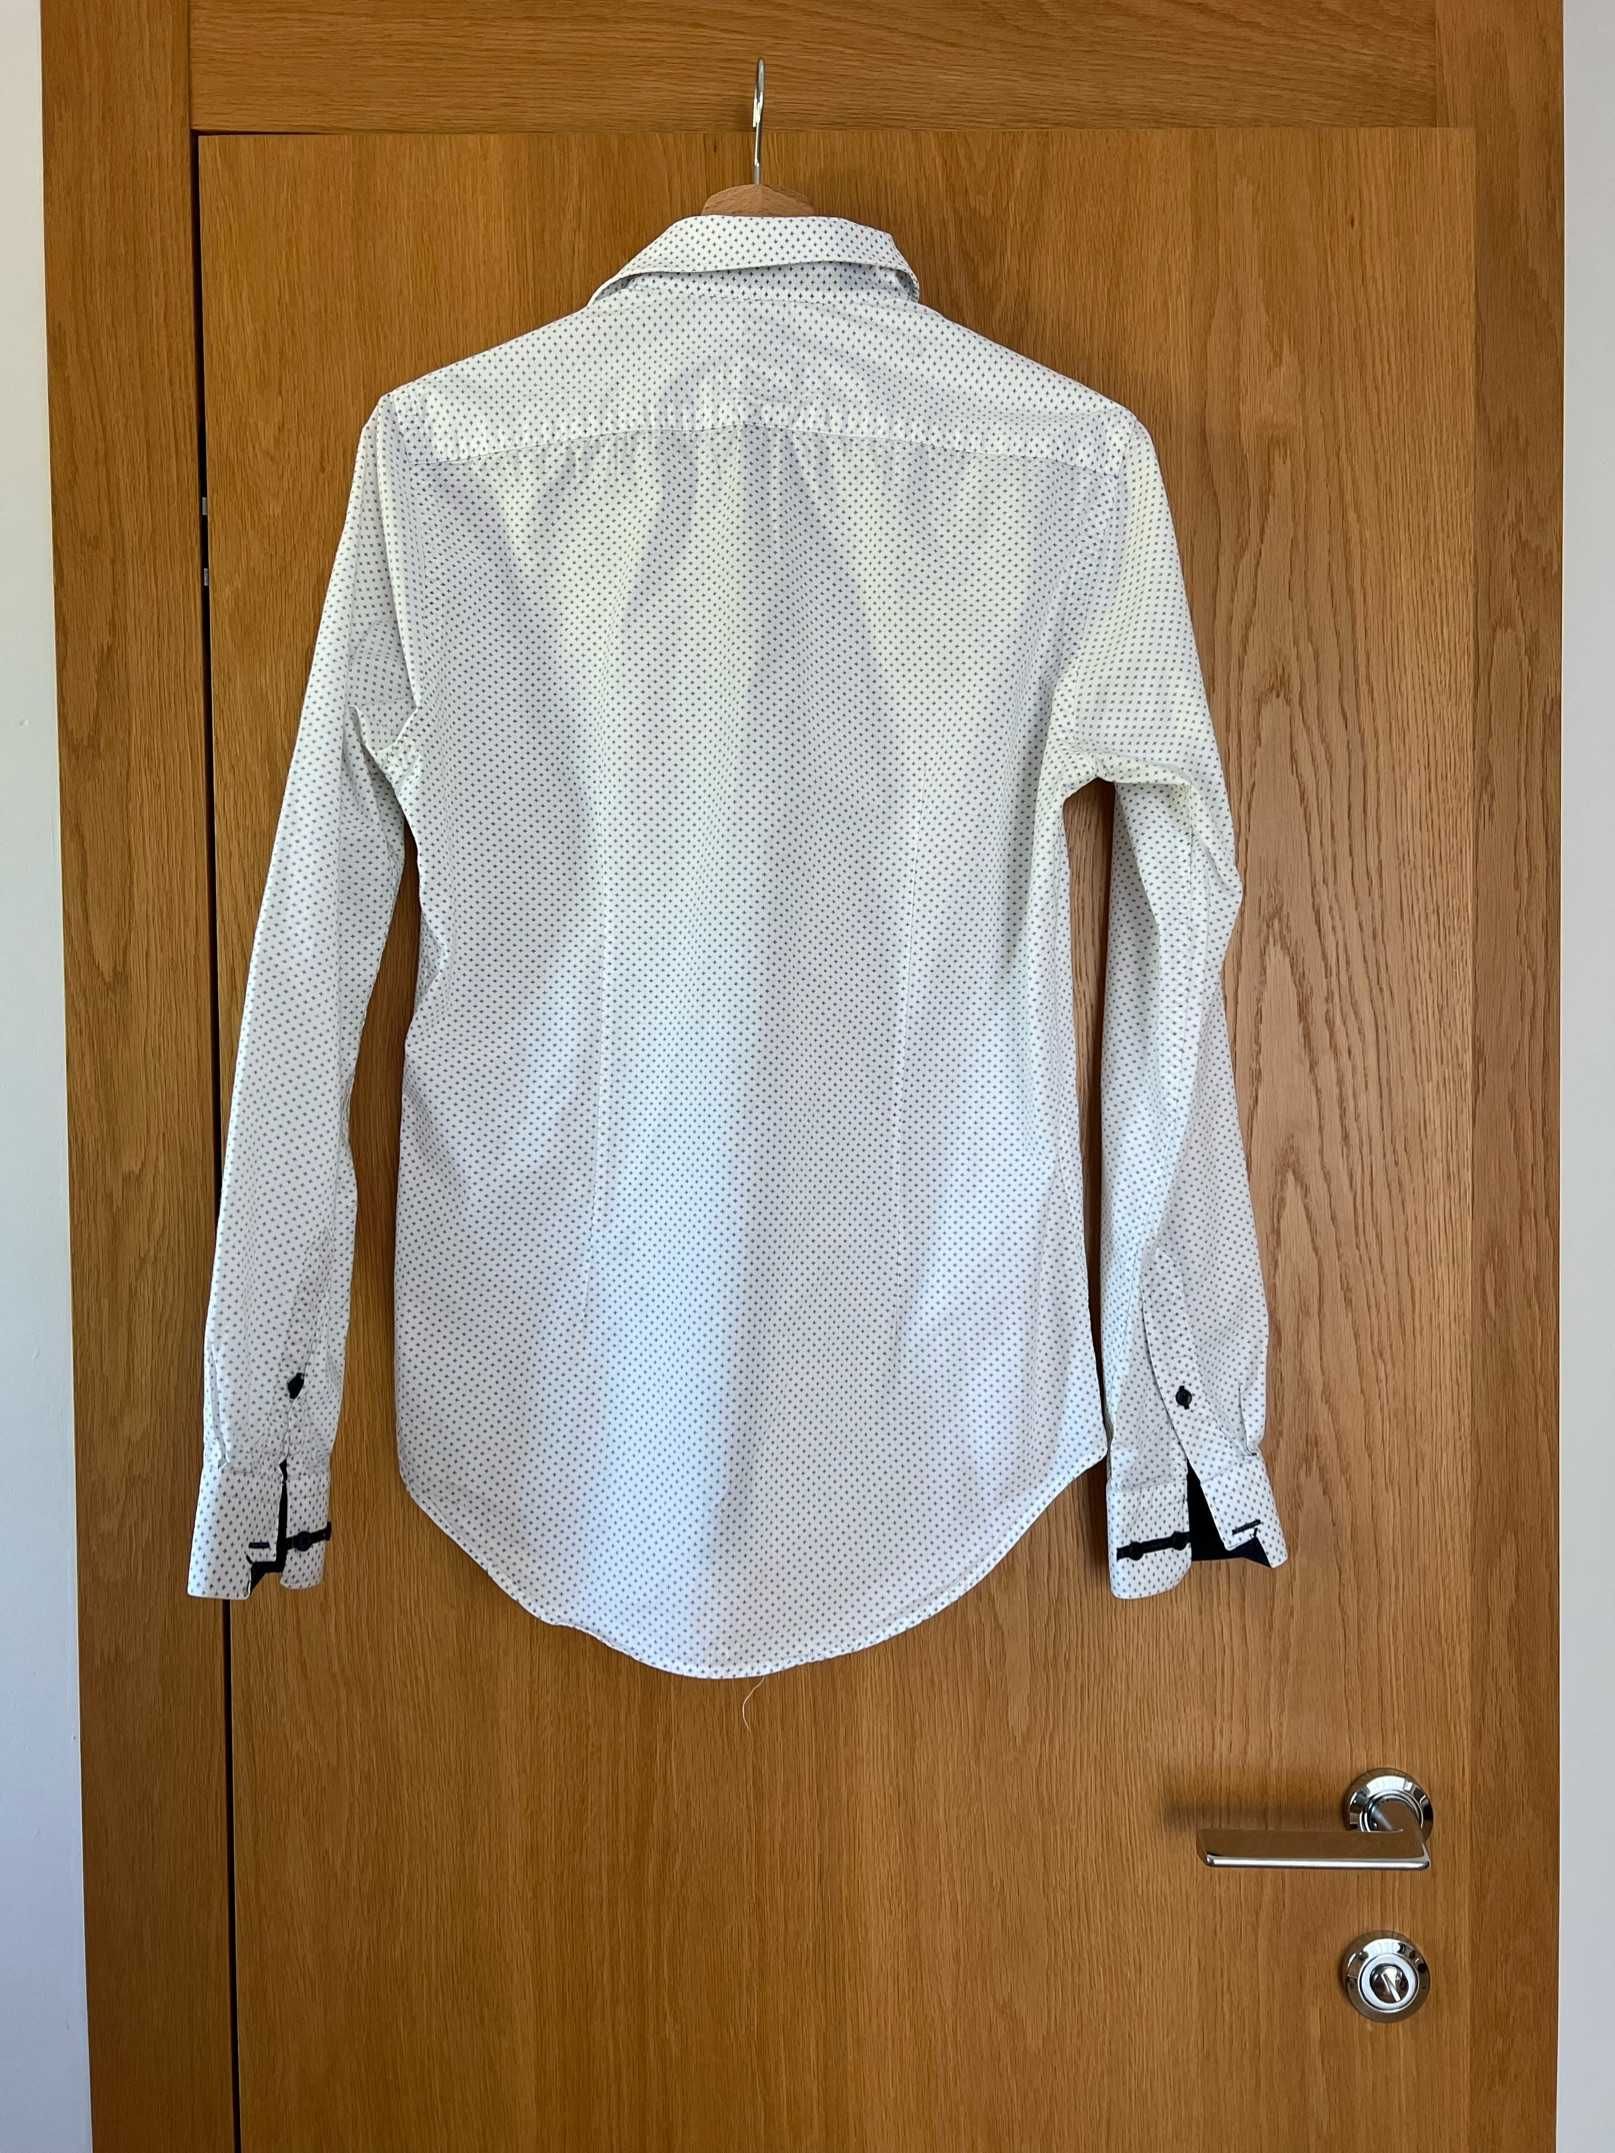 Biała koszula w granatowe wzorki (Slim fit), Zara - rozmiar S